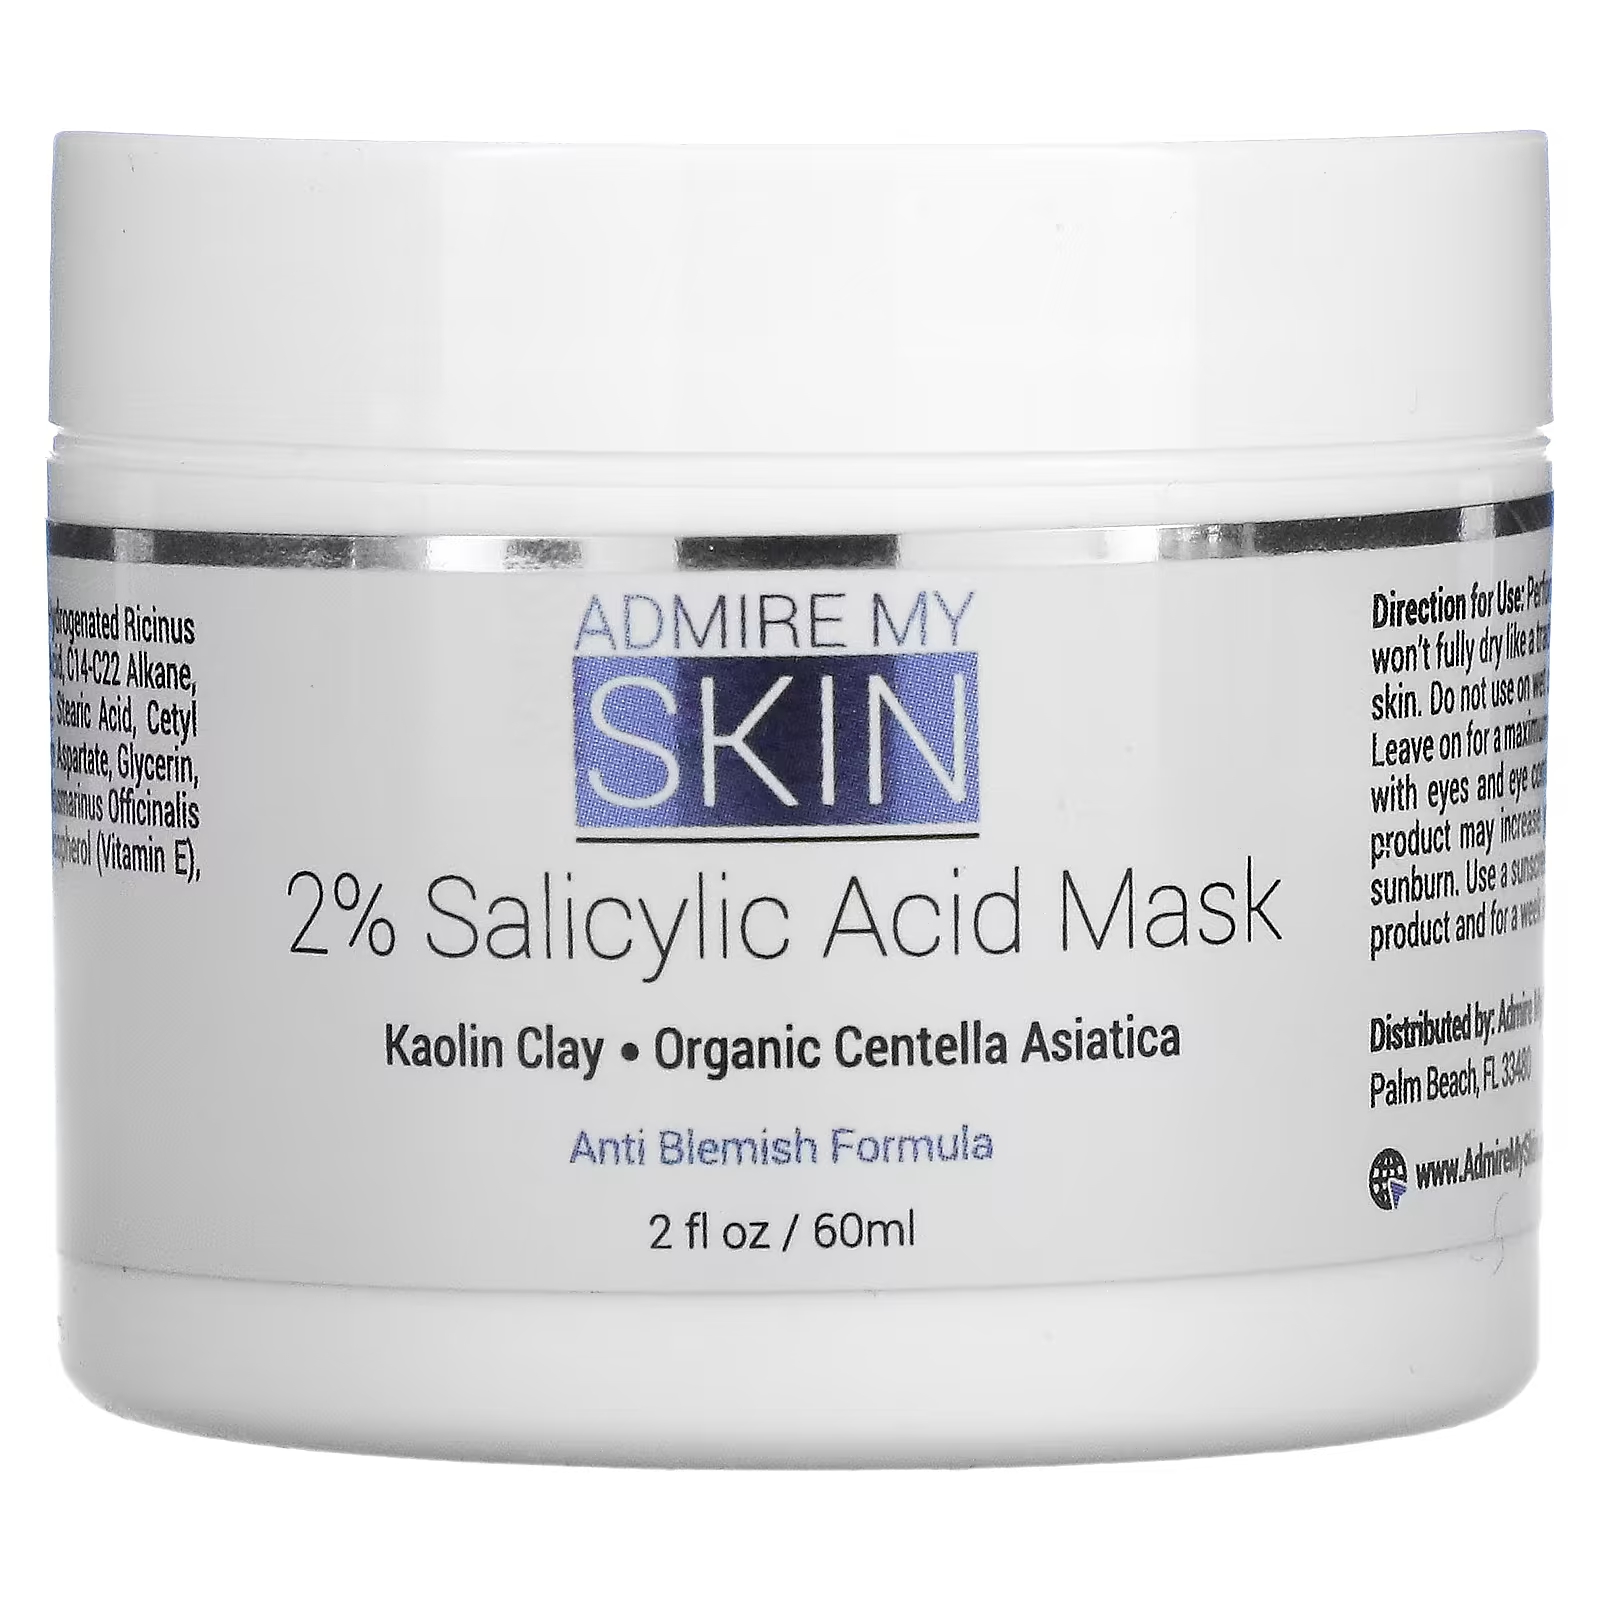 Косметическая маска Admire My Skin с 2% салициловой кислотой, 2 жидких унции (60 мл)